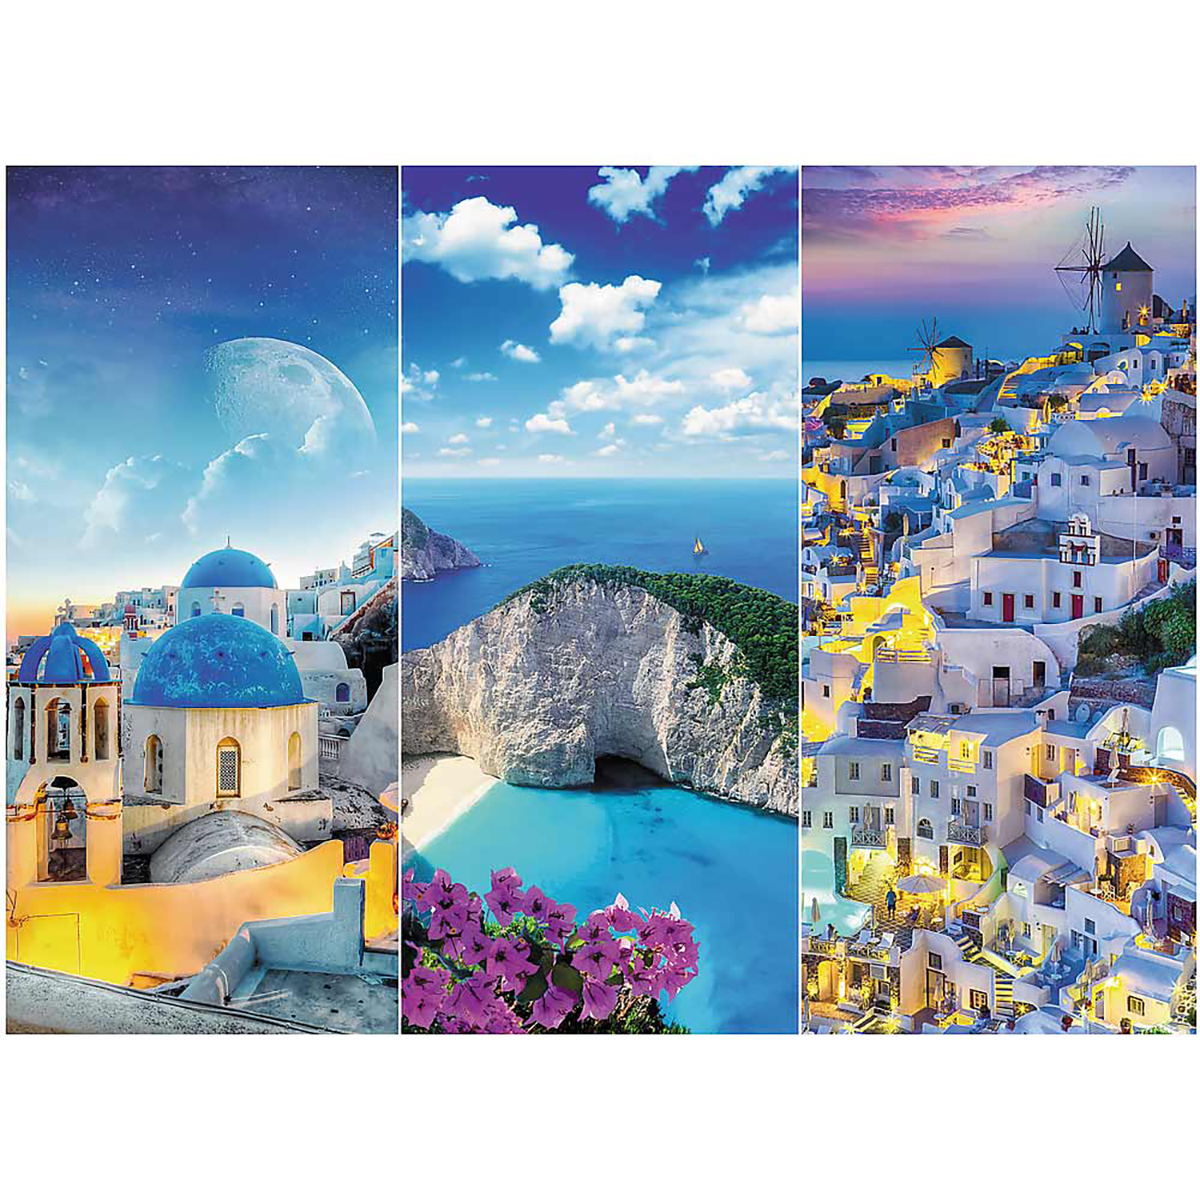 Urlaub in TREFL Puzzle Griechenland